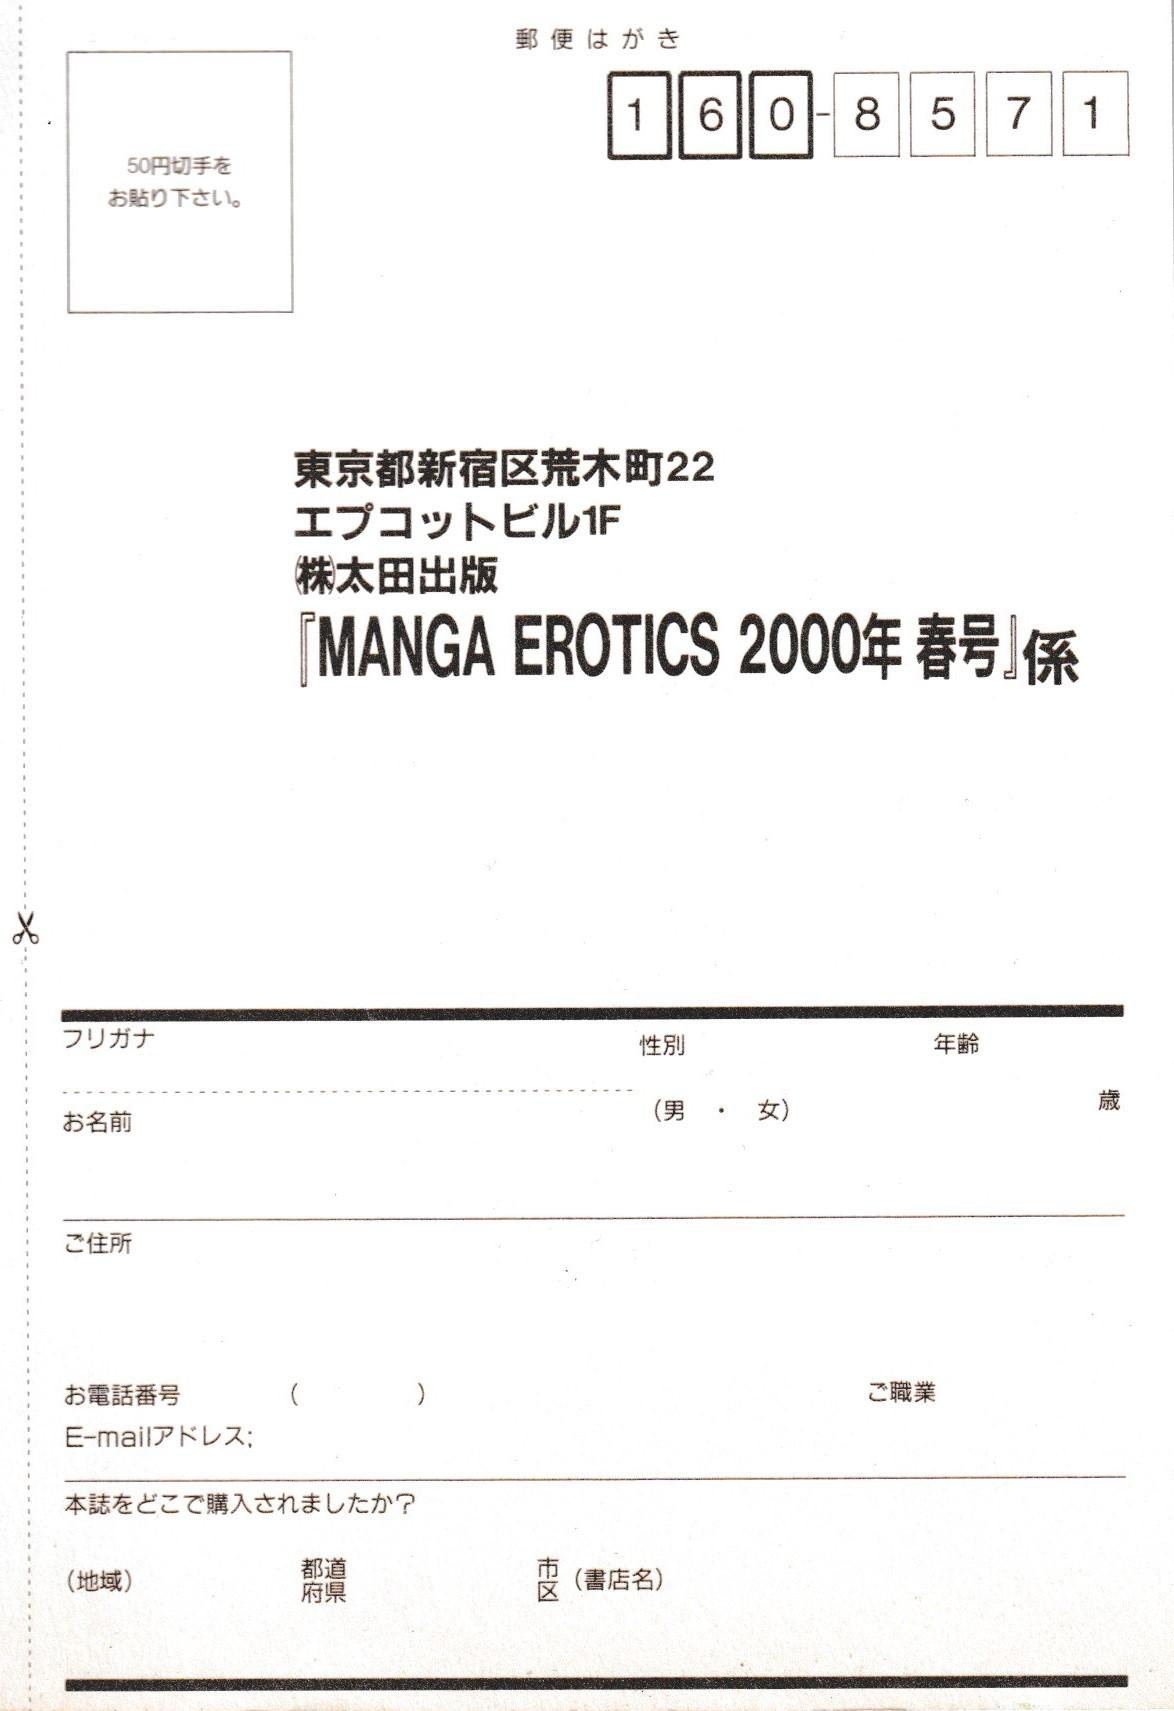 Erotics 2000 294